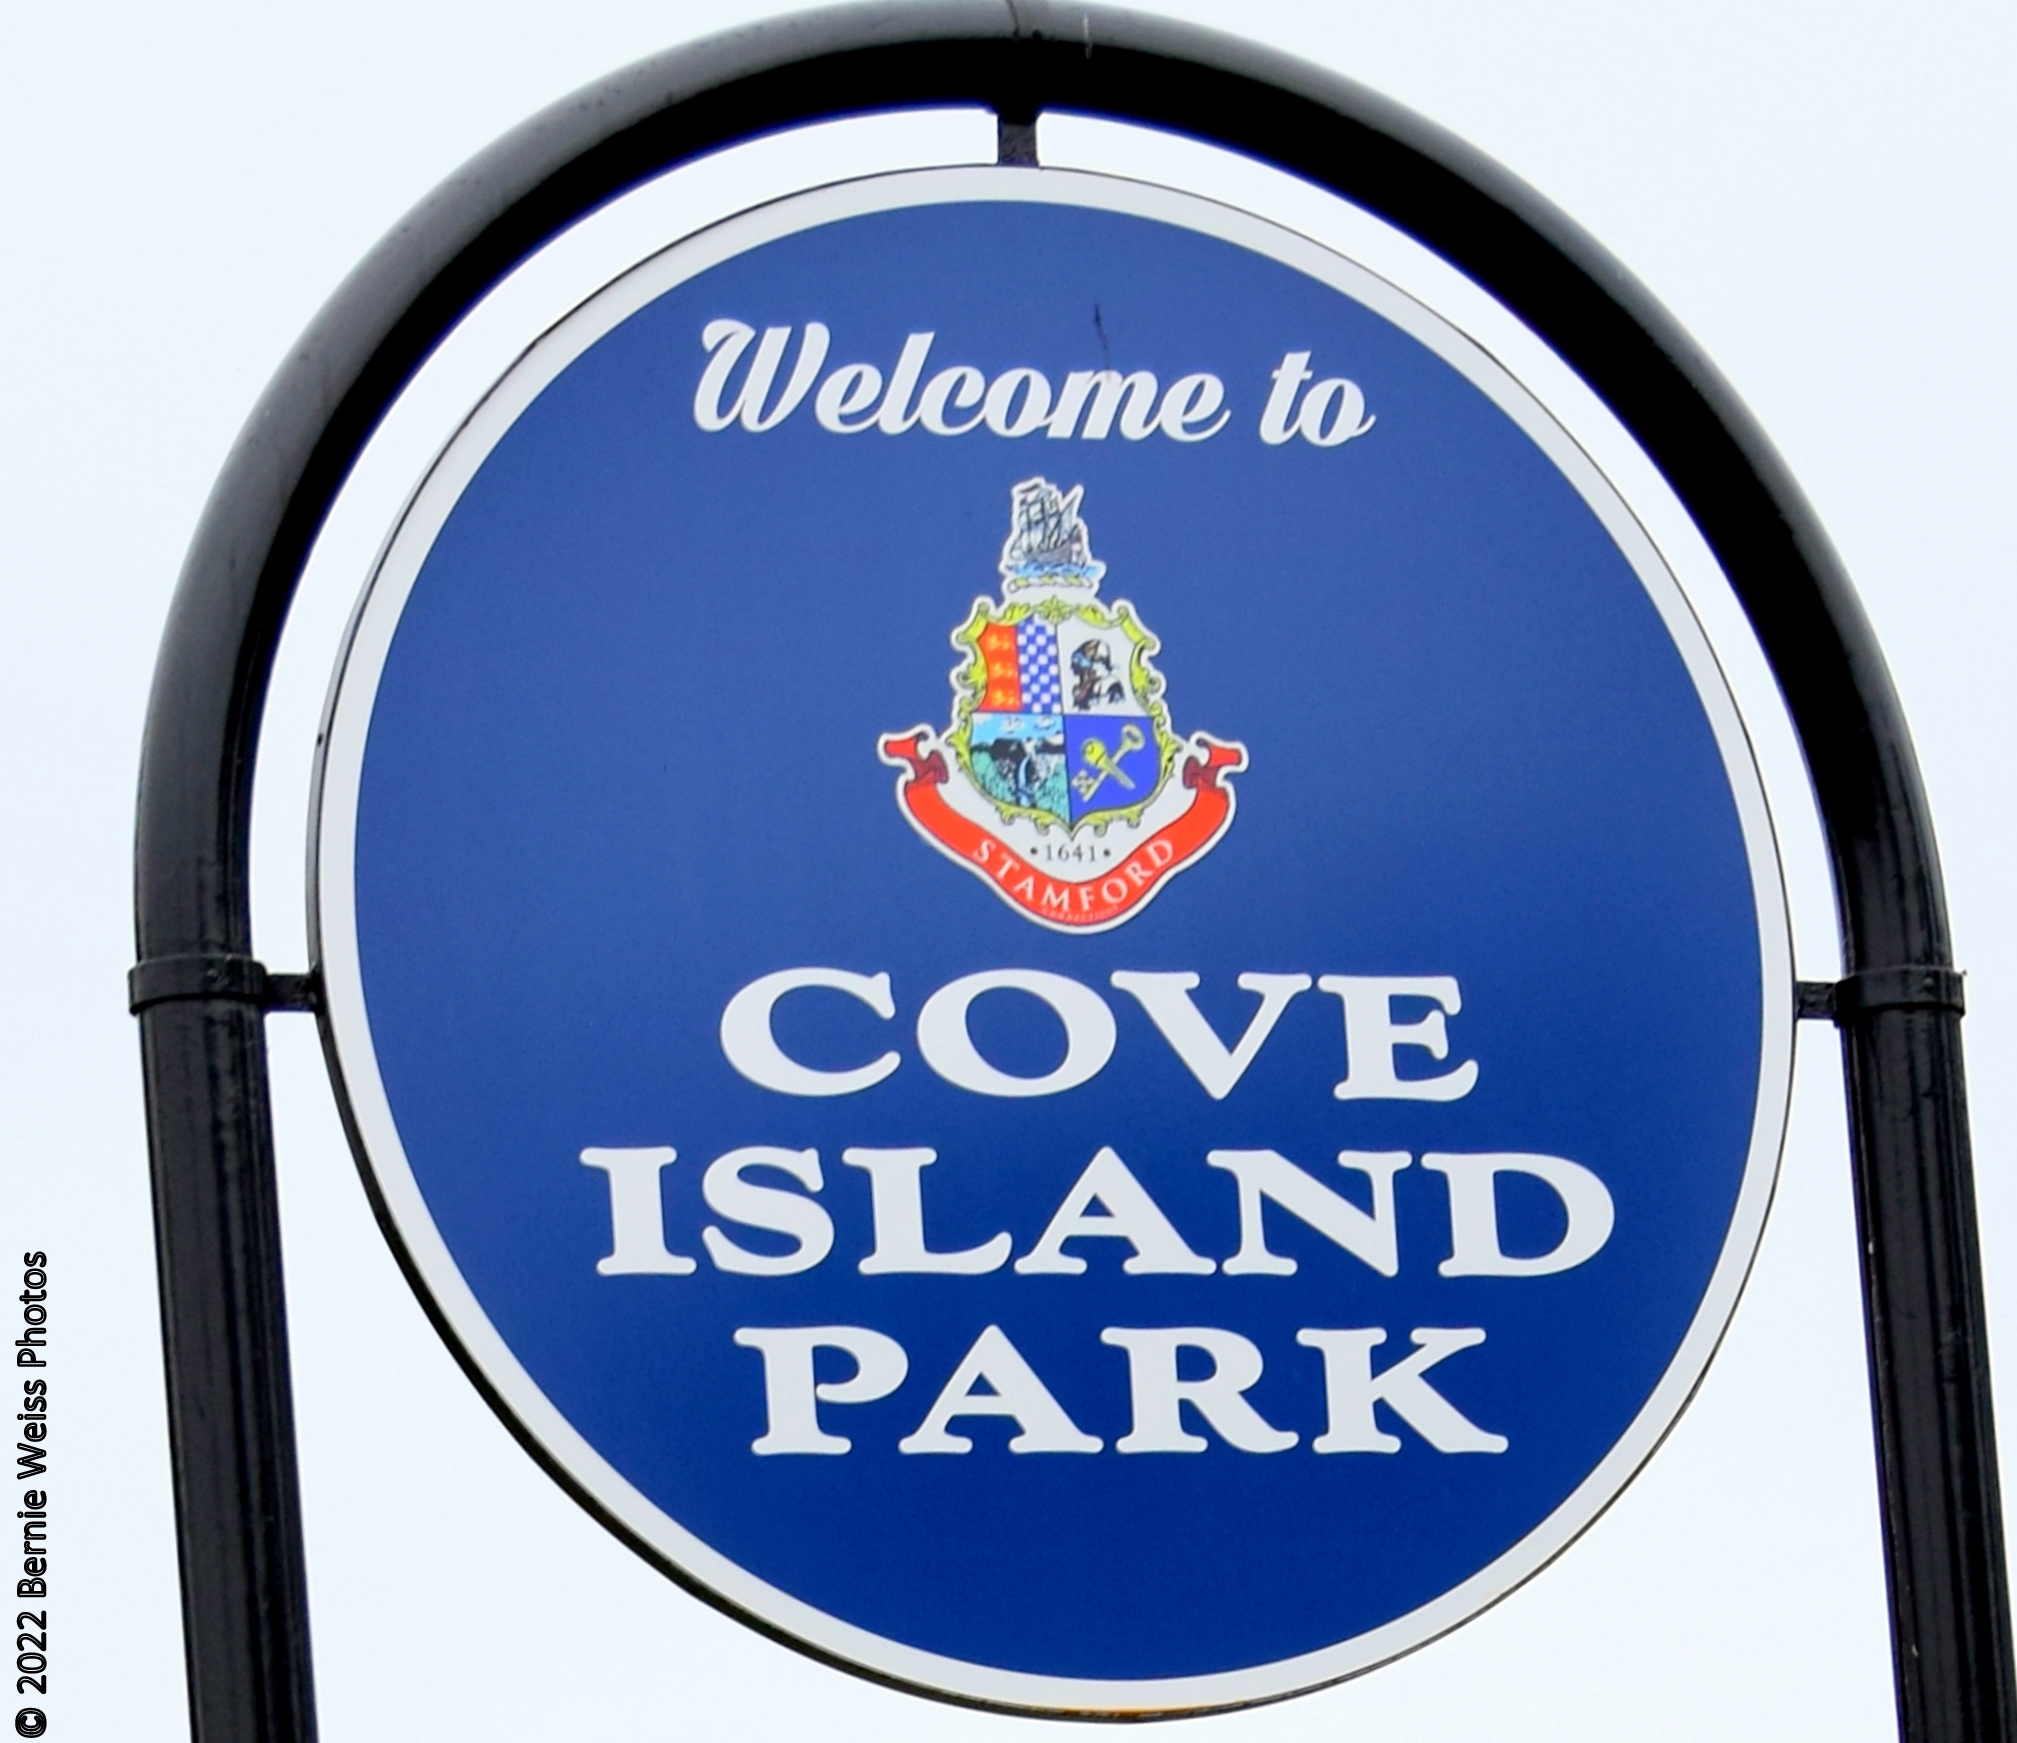 2022 SMAS Picnic at Cove Island